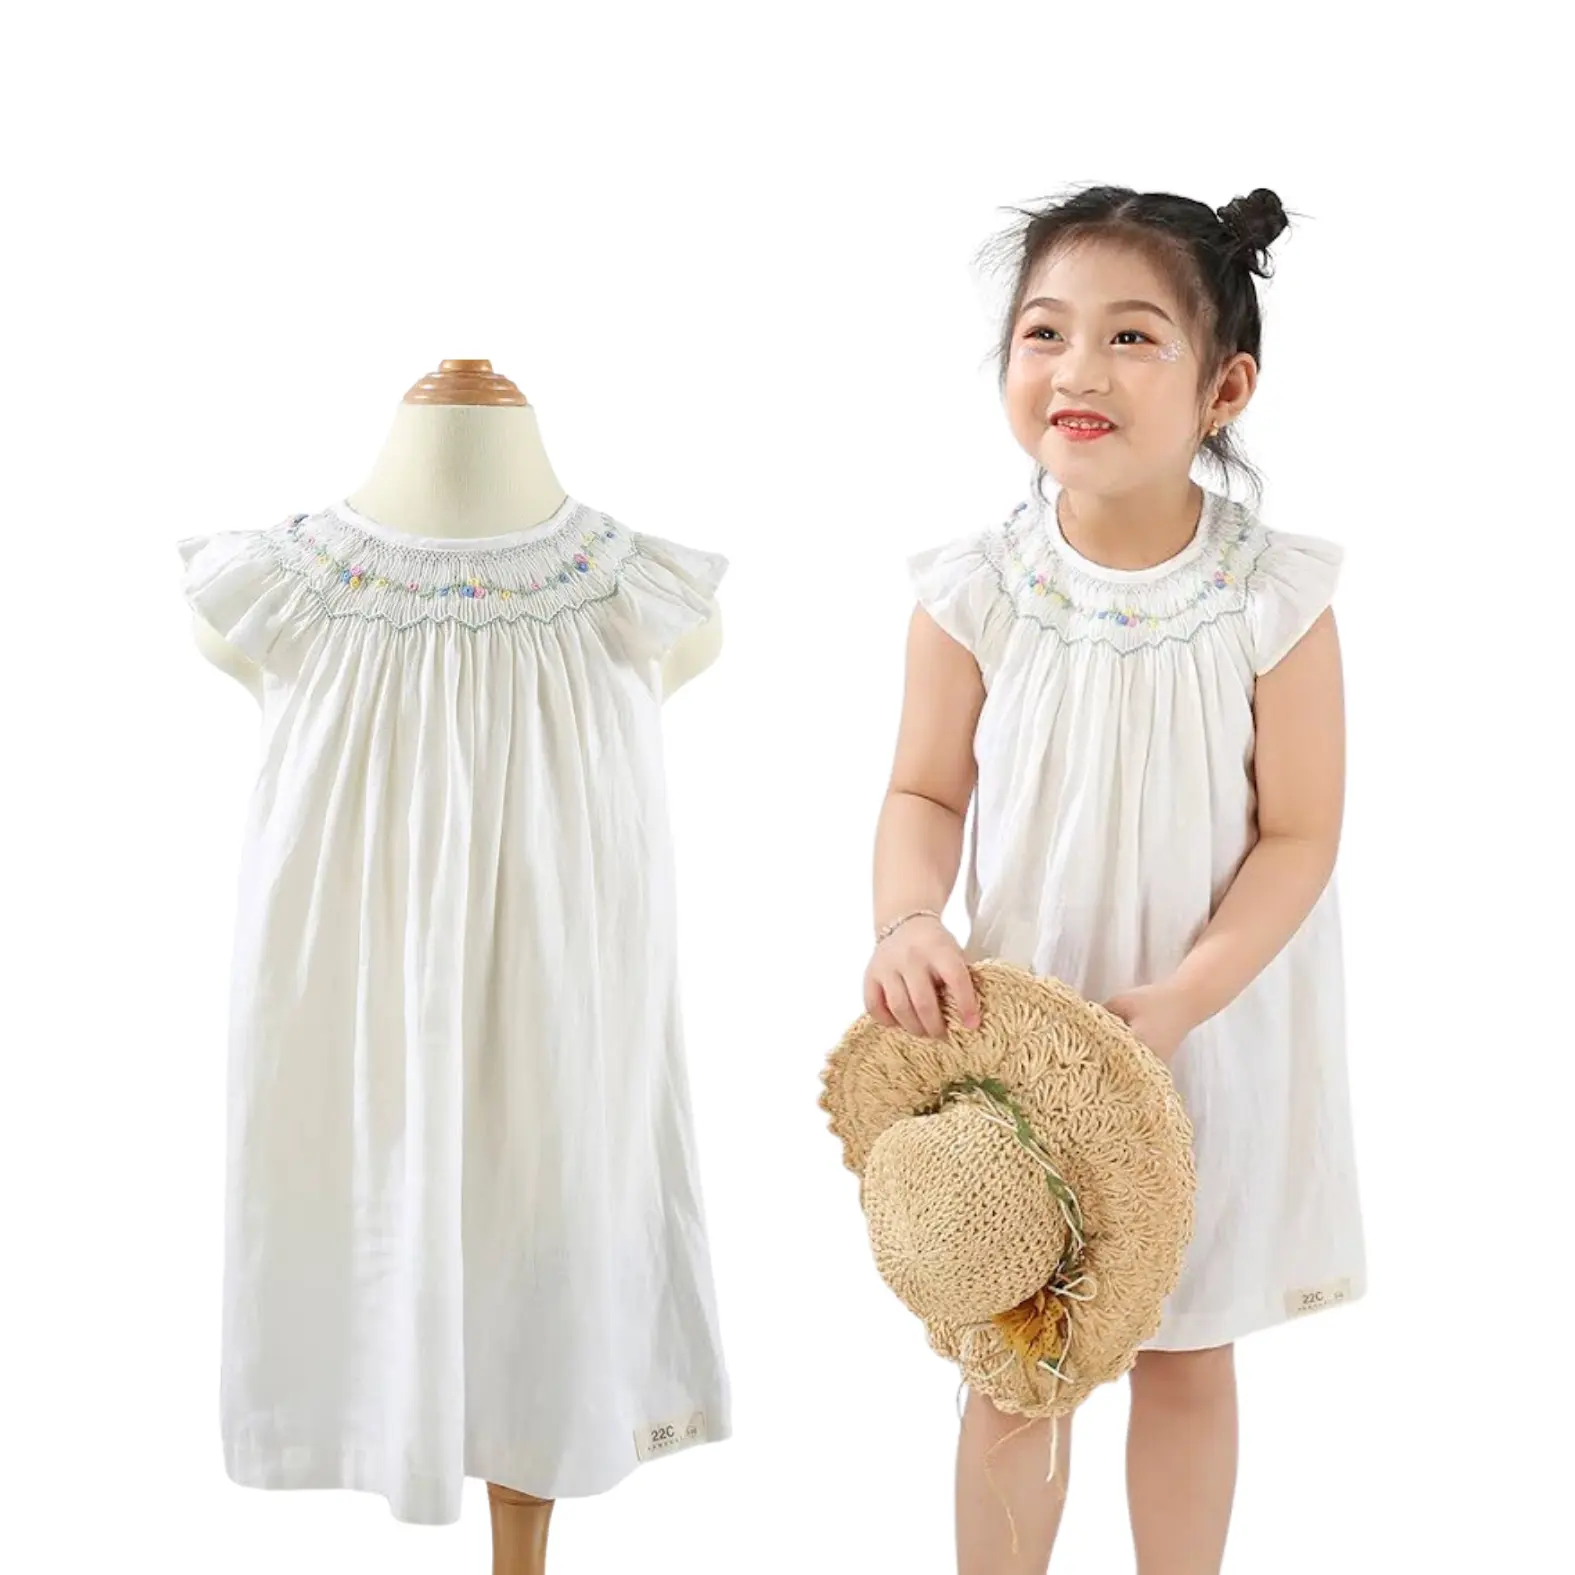 Children's Clothing Girl's Clothing Girls Dresses Wholesale Girl Smocked Dress White Short Cotton Customized Design Supplier